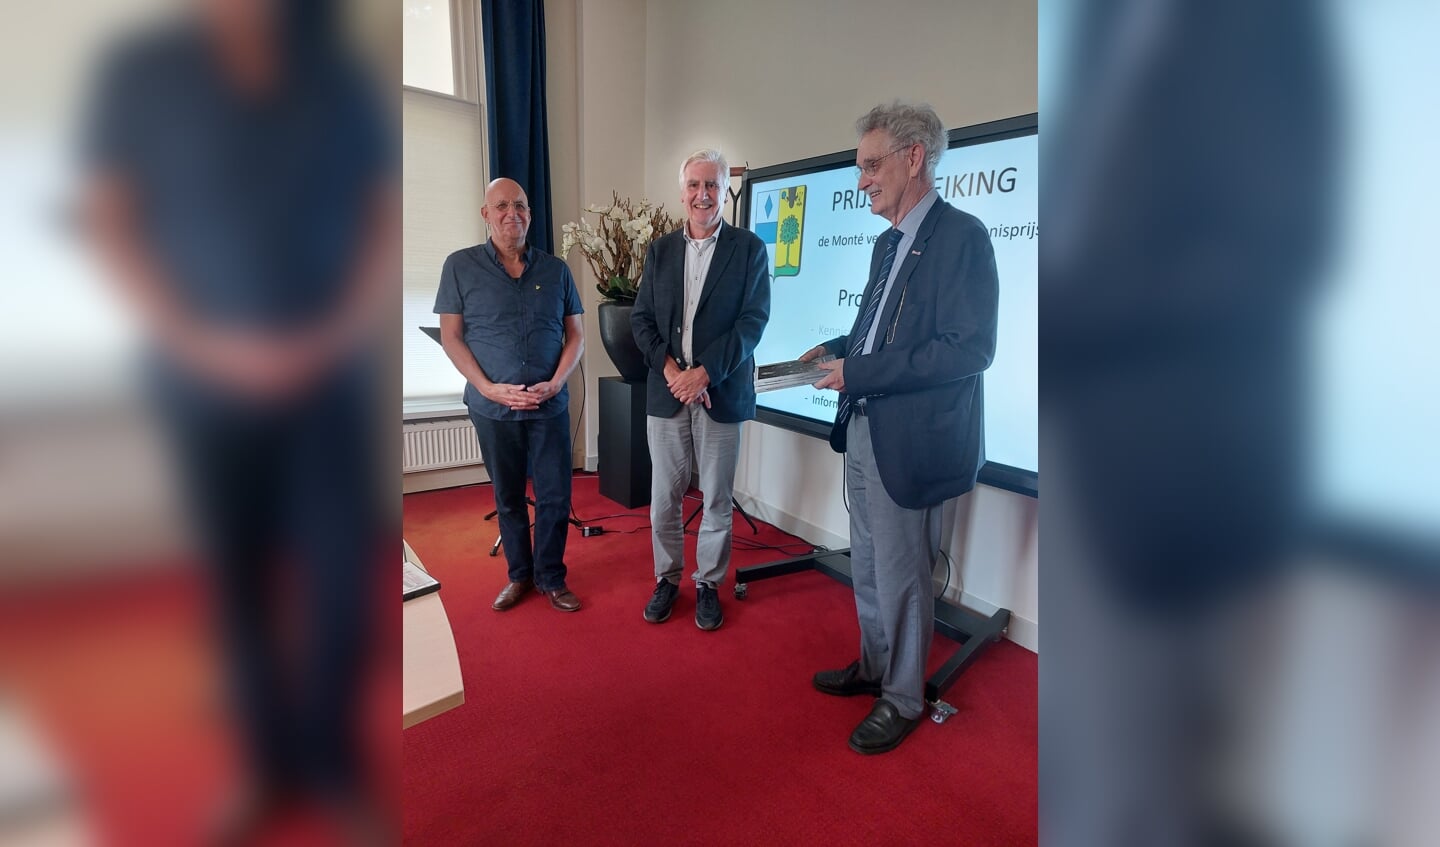 vlnr: Pieter veraart, Kees Kort en JanHein Heimel, voorzitter MvL